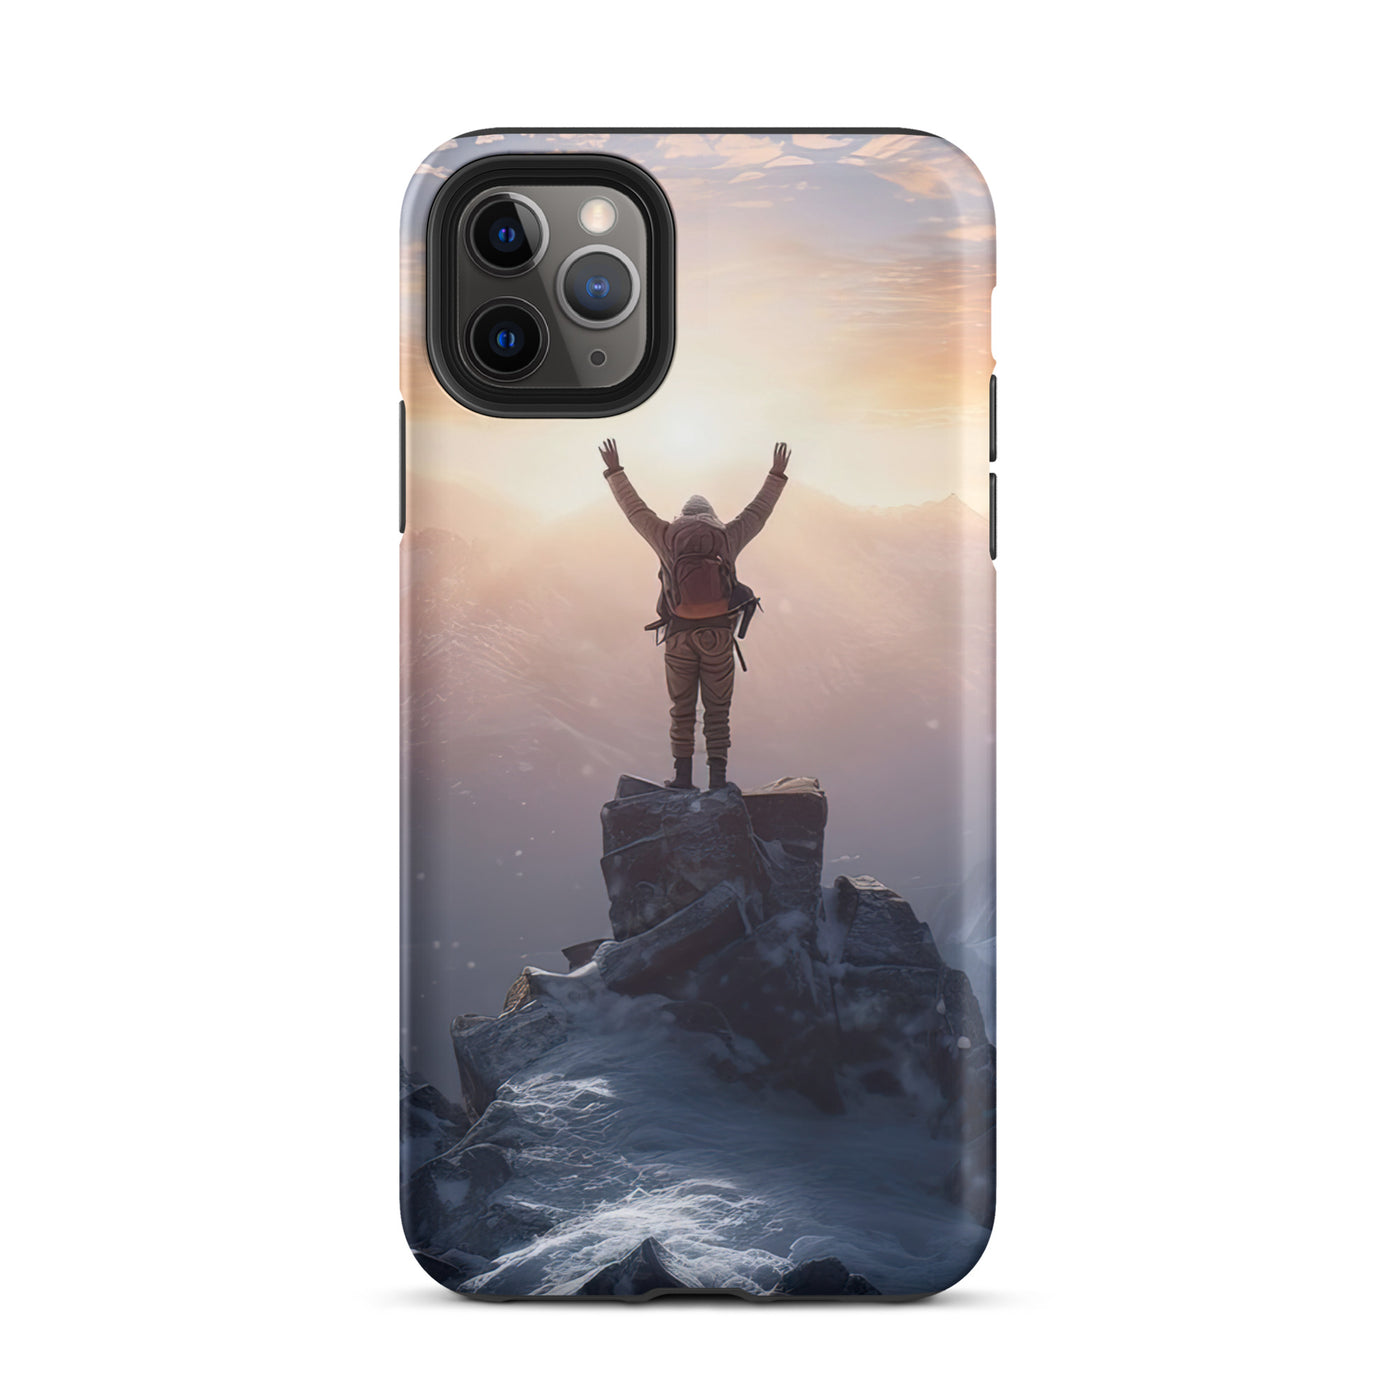 Mann auf der Spitze eines Berges - Landschaftsmalerei - iPhone Schutzhülle (robust) berge xxx iPhone 11 Pro Max